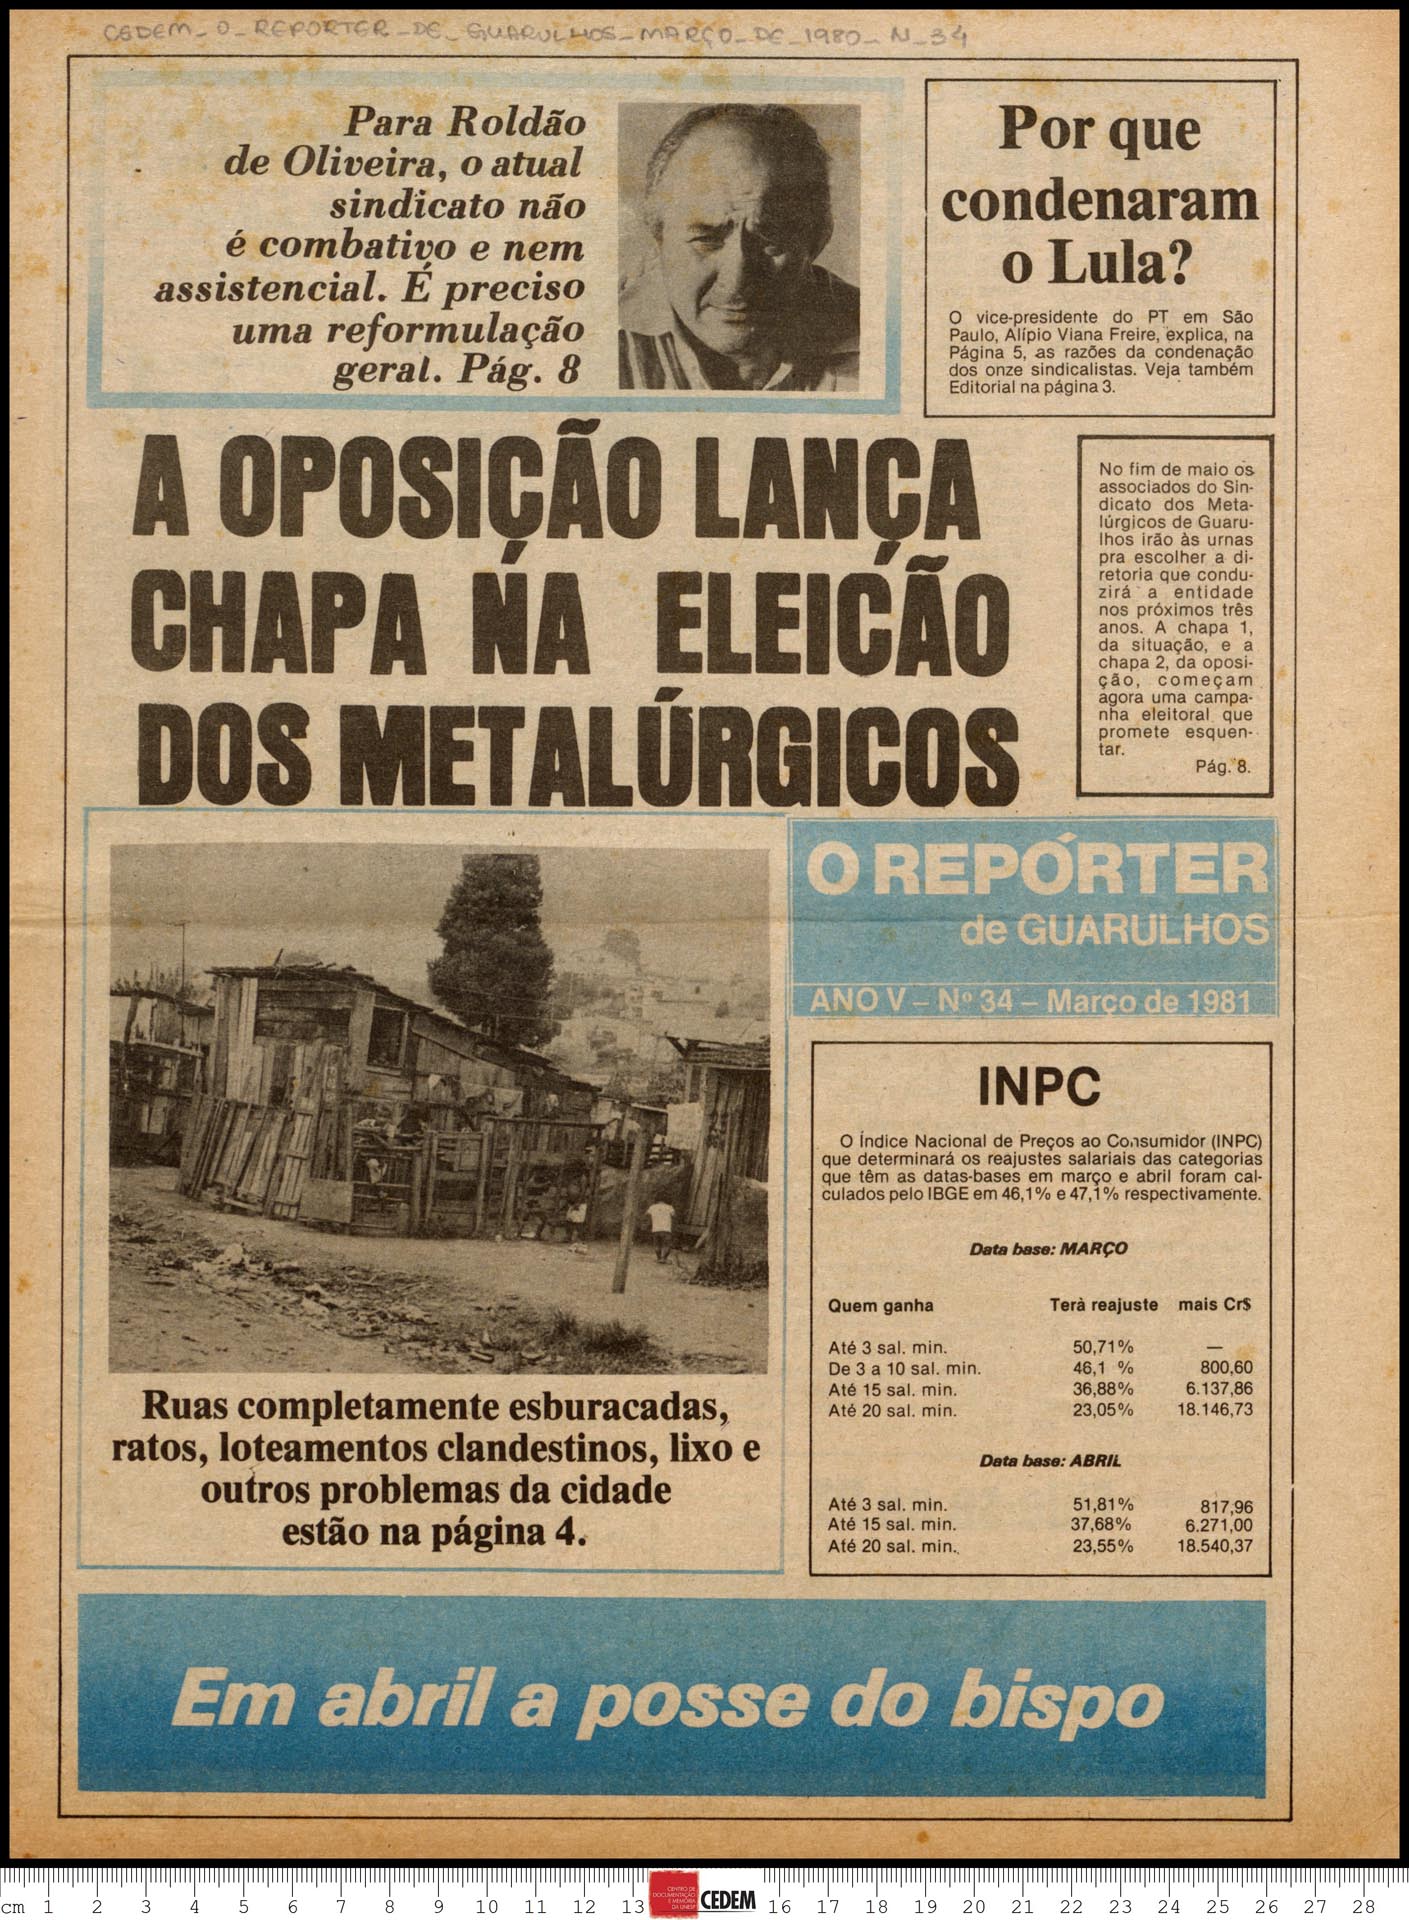 O reportér de Guarulhos - 34 - mar. 1981